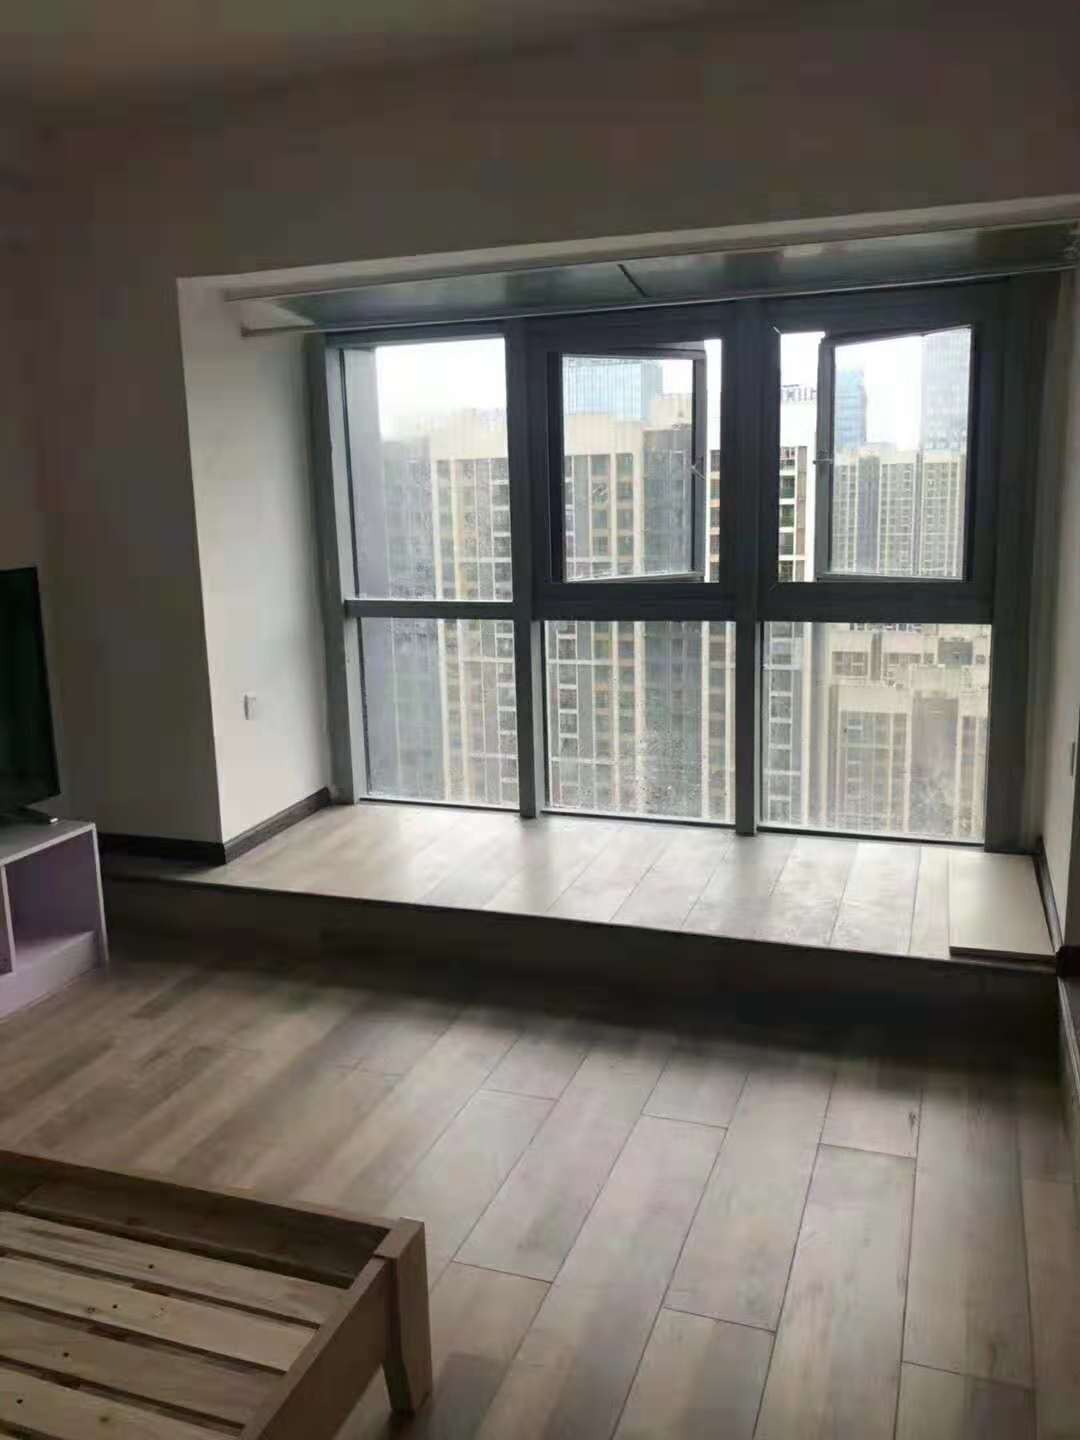 简约 小公寓 新房装修 卧室图片来自乐粉_20181003112538352在贵阳35㎡小公寓案例效果图的分享